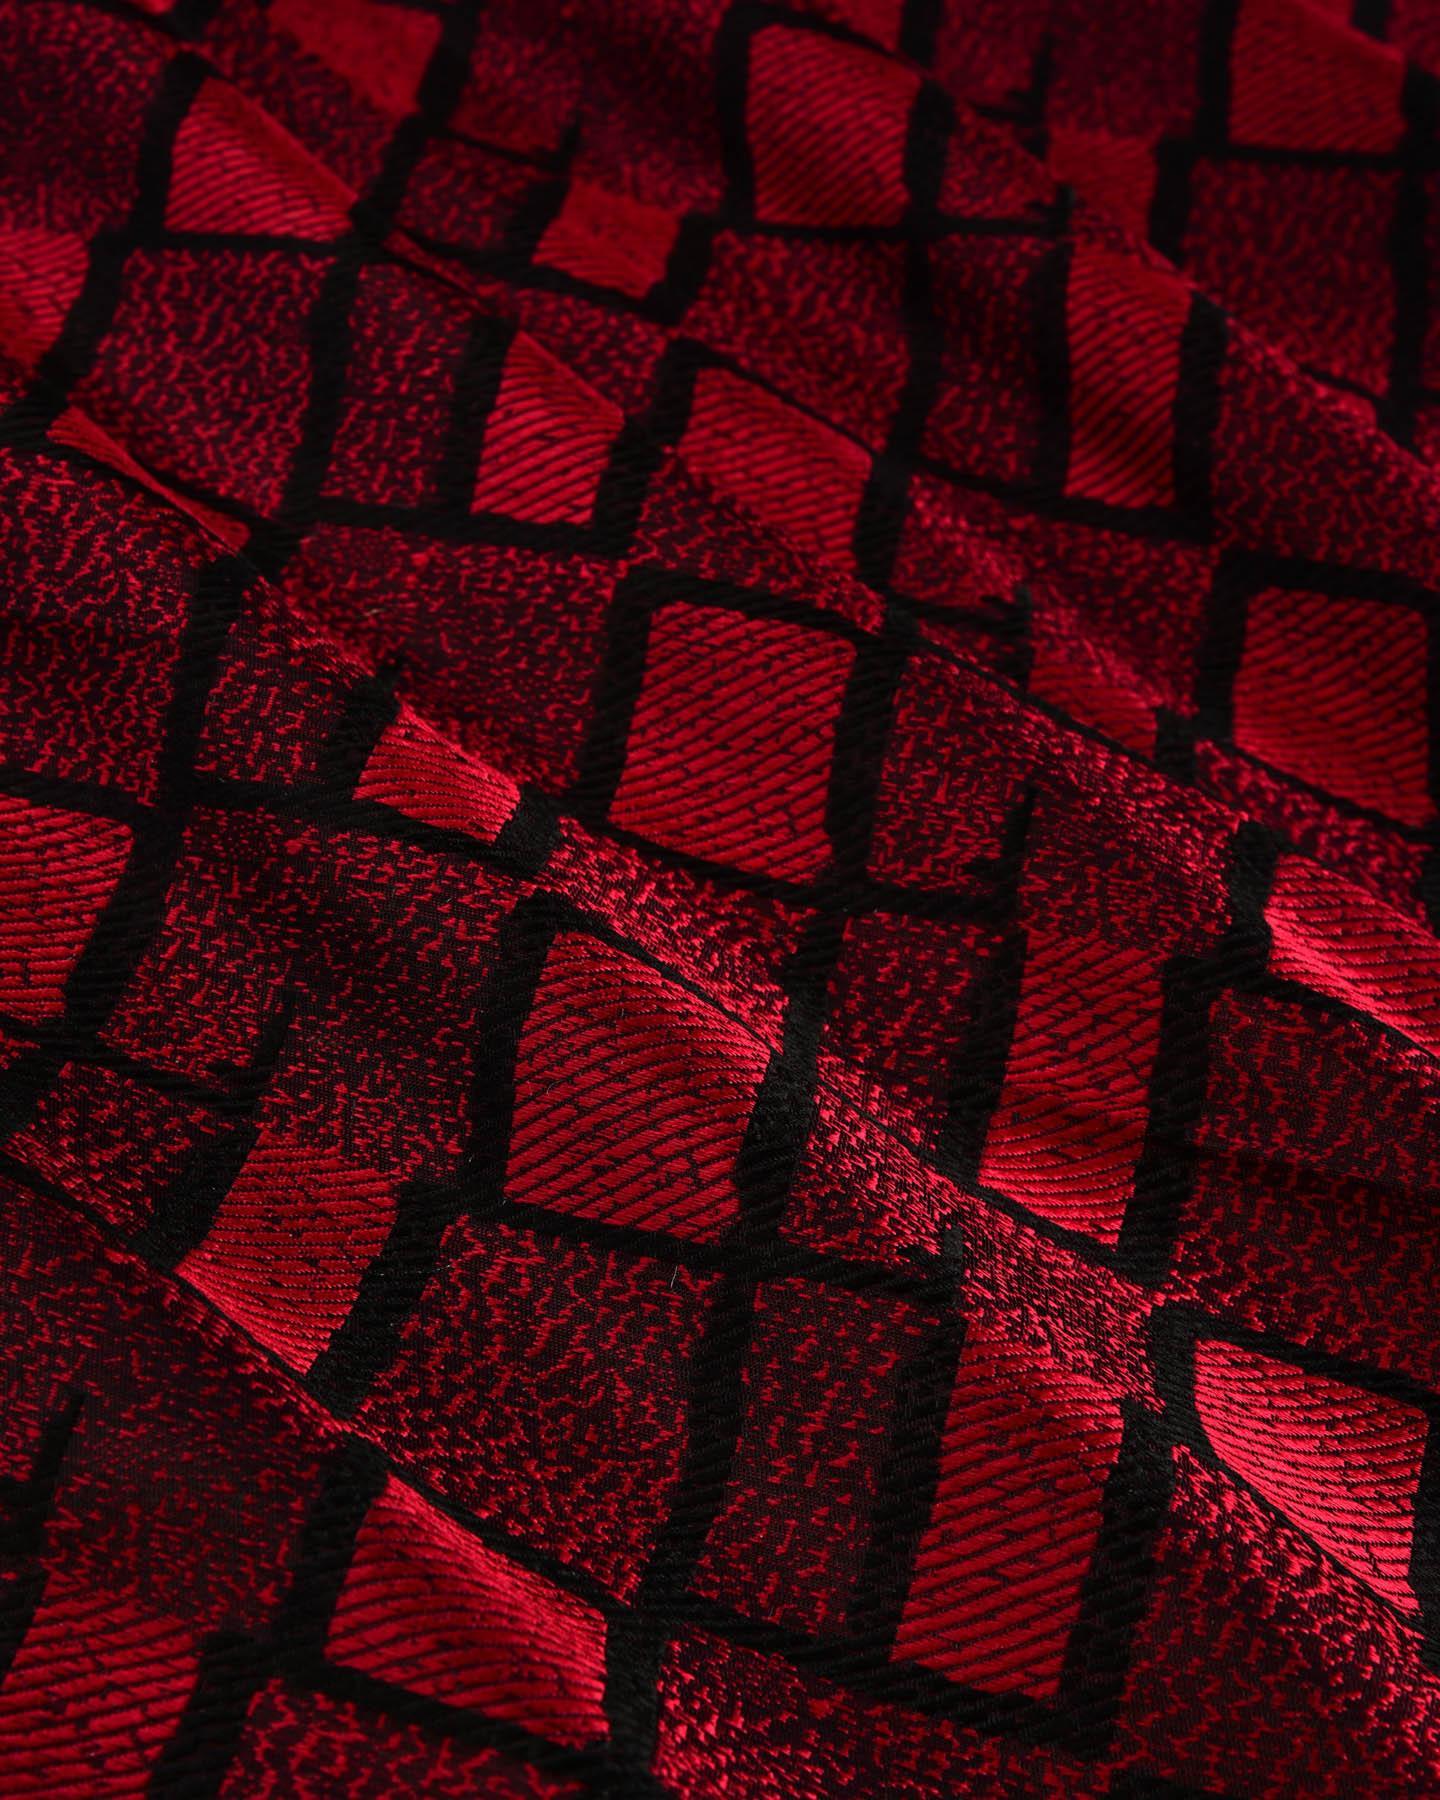 Red on Black Banarasi Geometric Satin Tanchoi Handwoven Katan Silk Fabric - By HolyWeaves, Benares